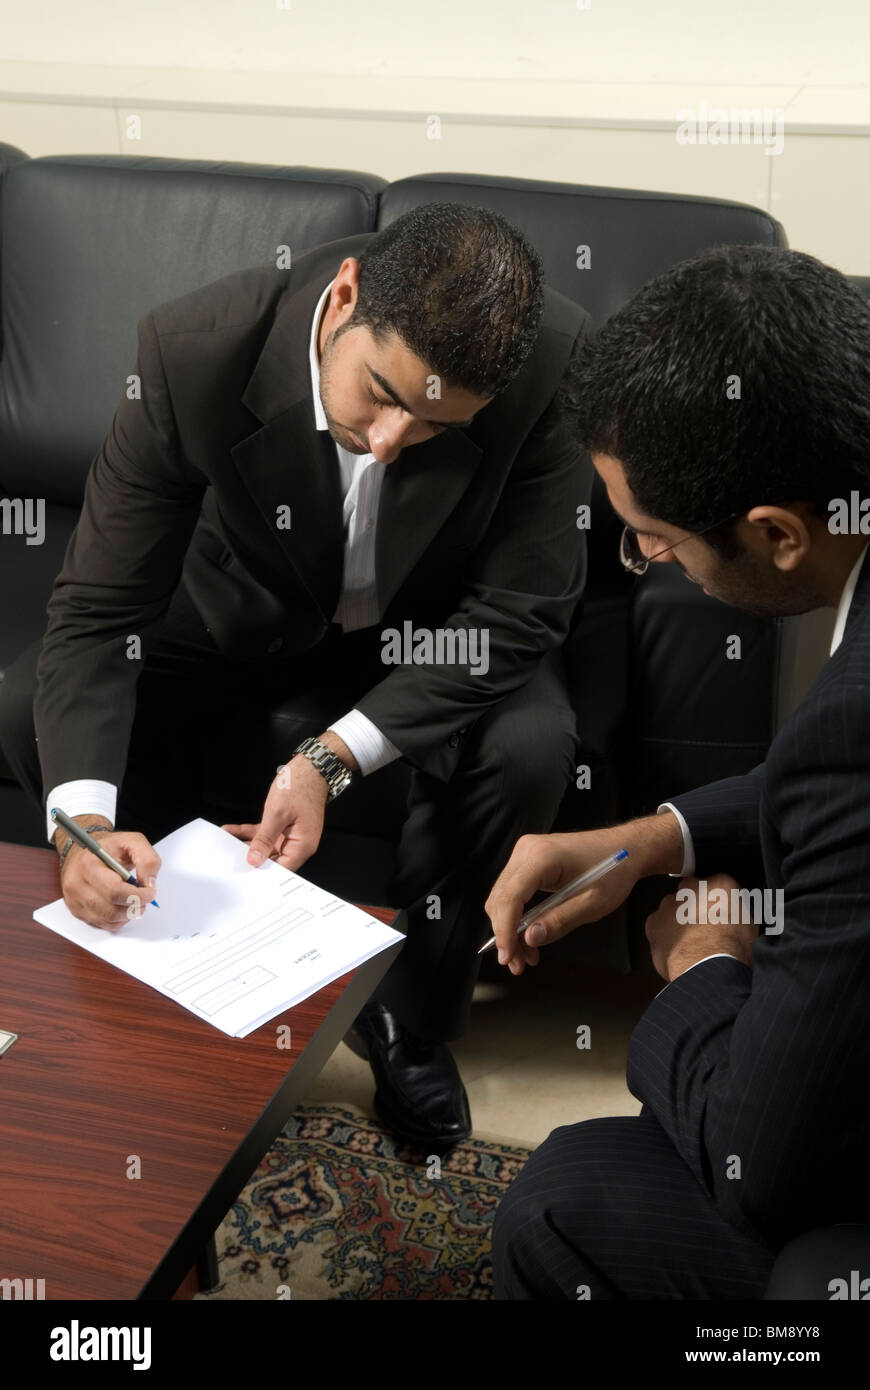 Deux hommes du Moyen-Orient la signature de contrats à l'intérieur de Beyrouth Liban bureau Moyen-Orient Banque D'Images